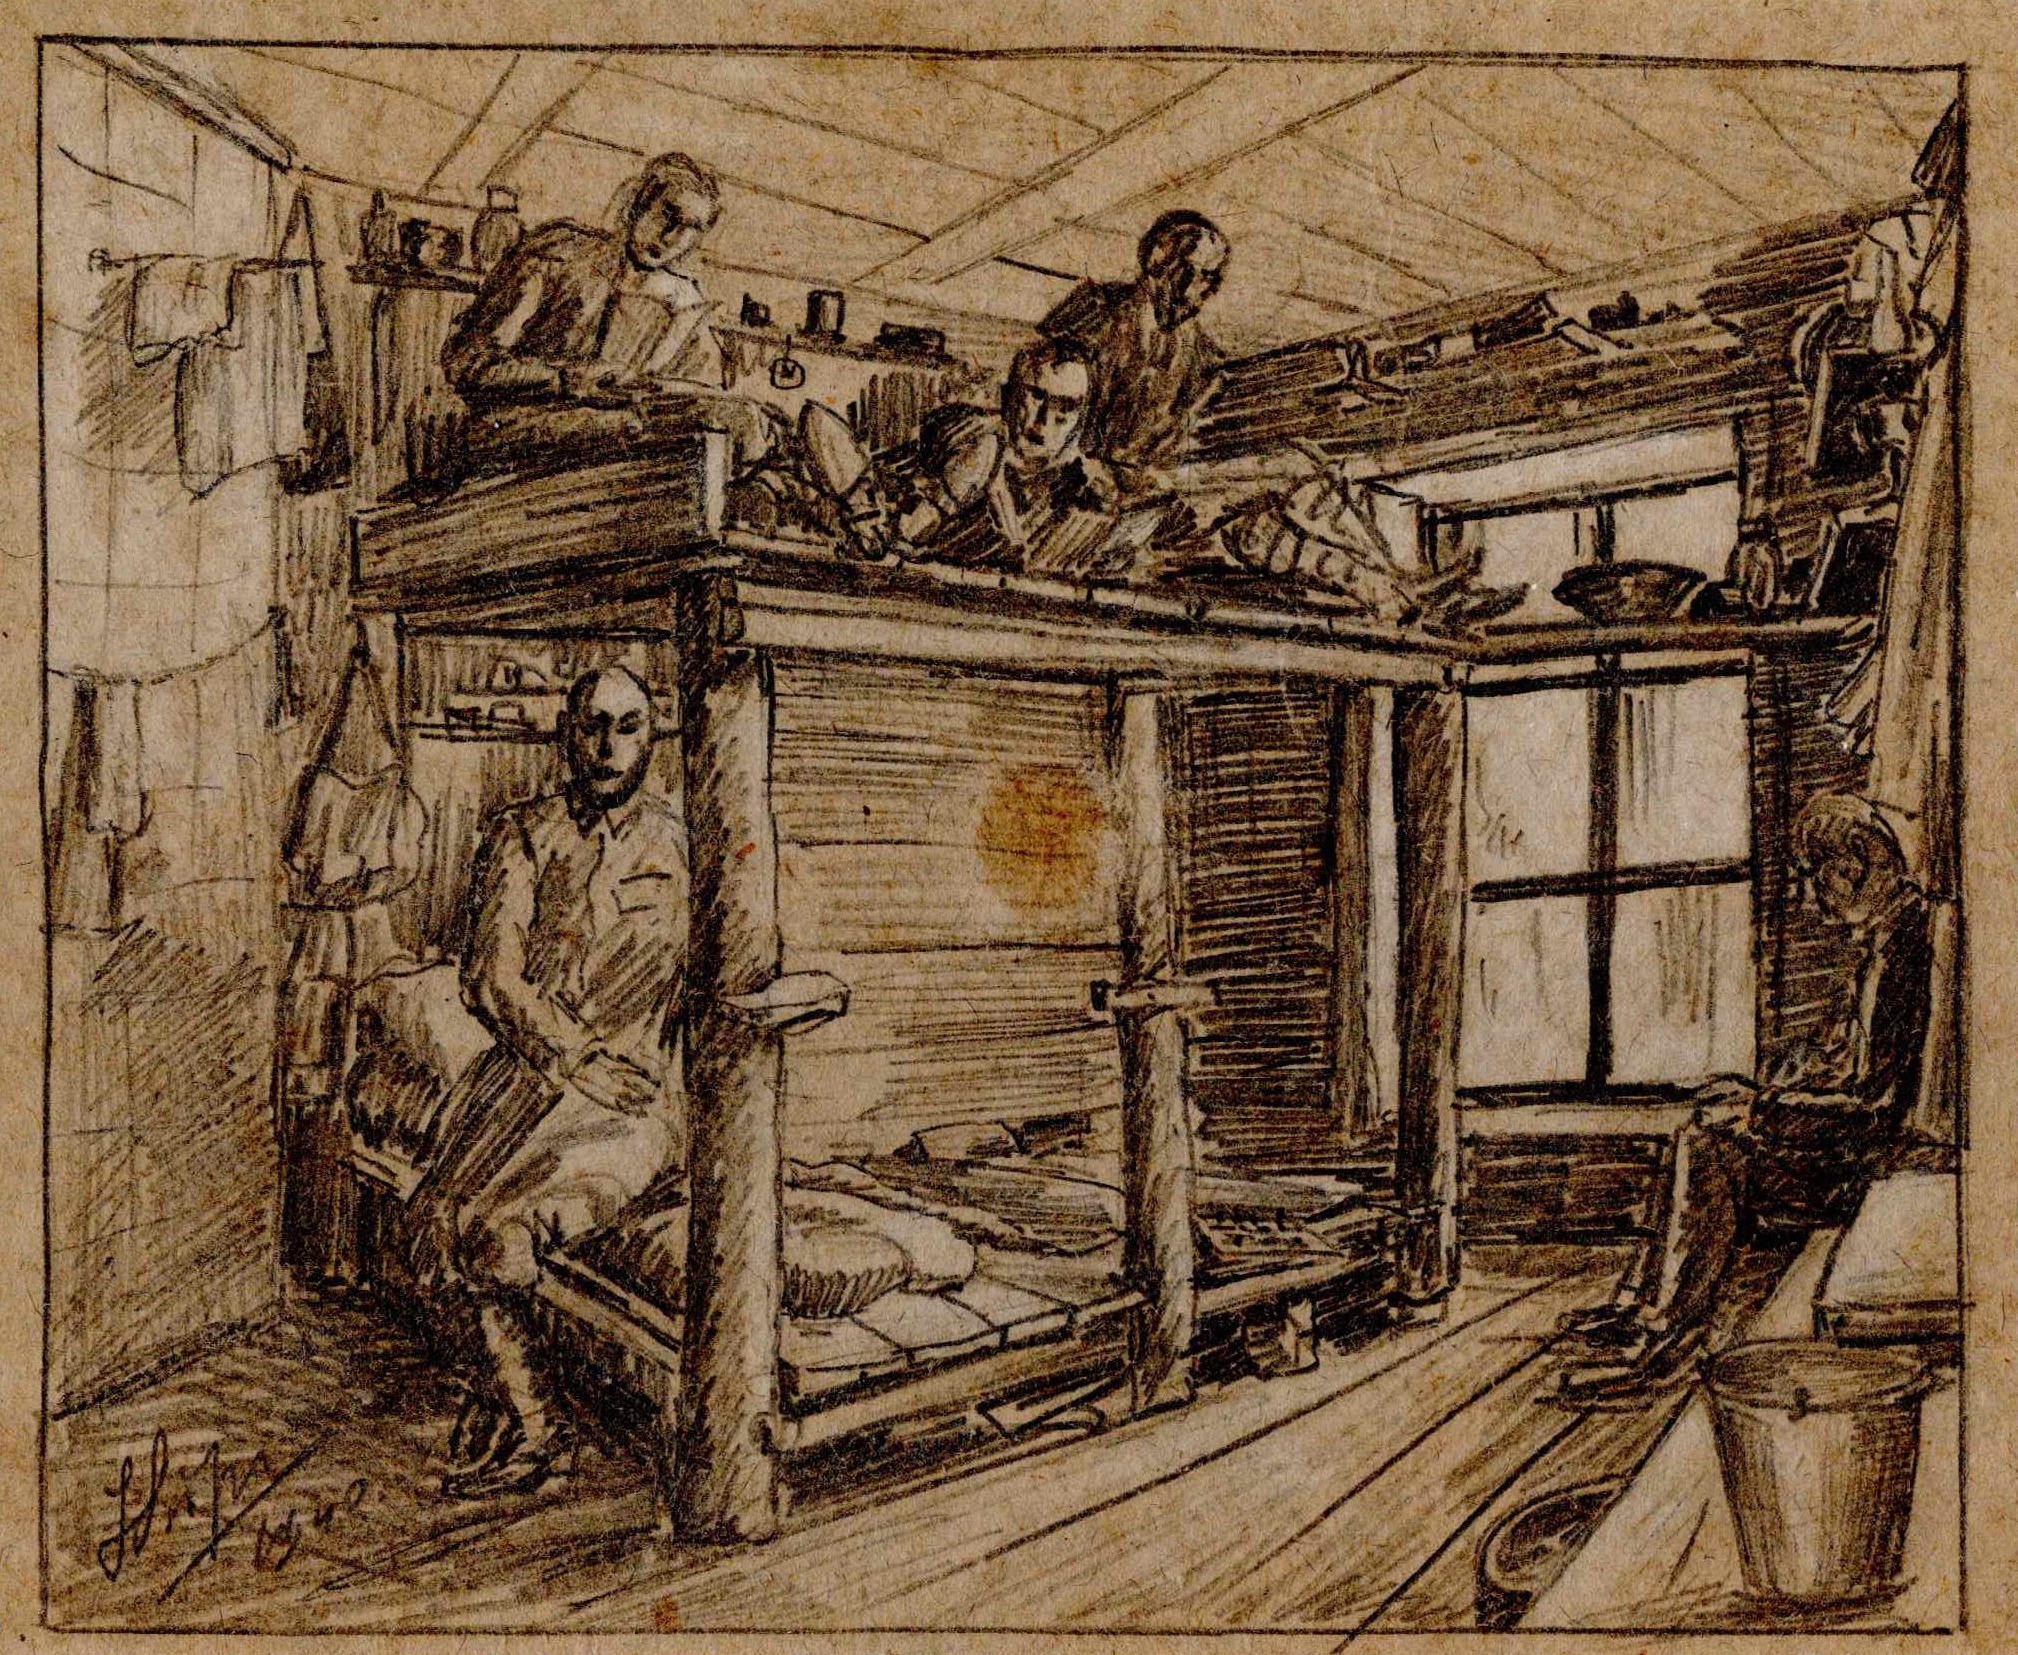 Rysunek przedstawiający wnętrze baraku. Widać pryczę piętrową oraz leżących na niej więźniów. Józef Lipiński, 1940,